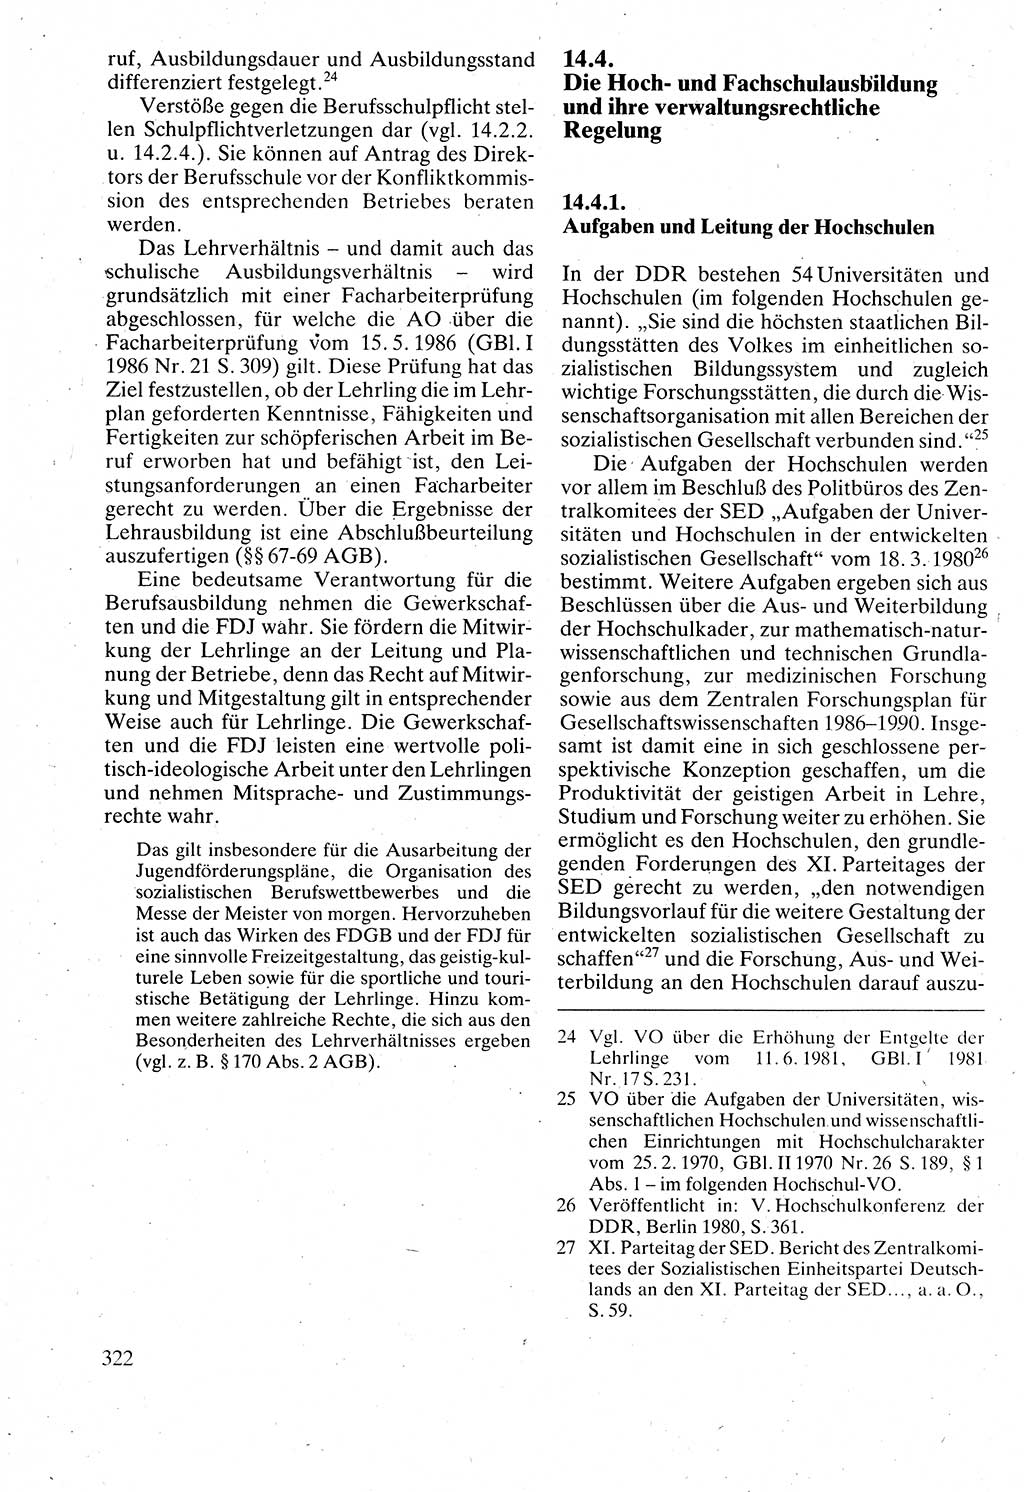 Verwaltungsrecht [Deutsche Demokratische Republik (DDR)], Lehrbuch 1988, Seite 322 (Verw.-R. DDR Lb. 1988, S. 322)